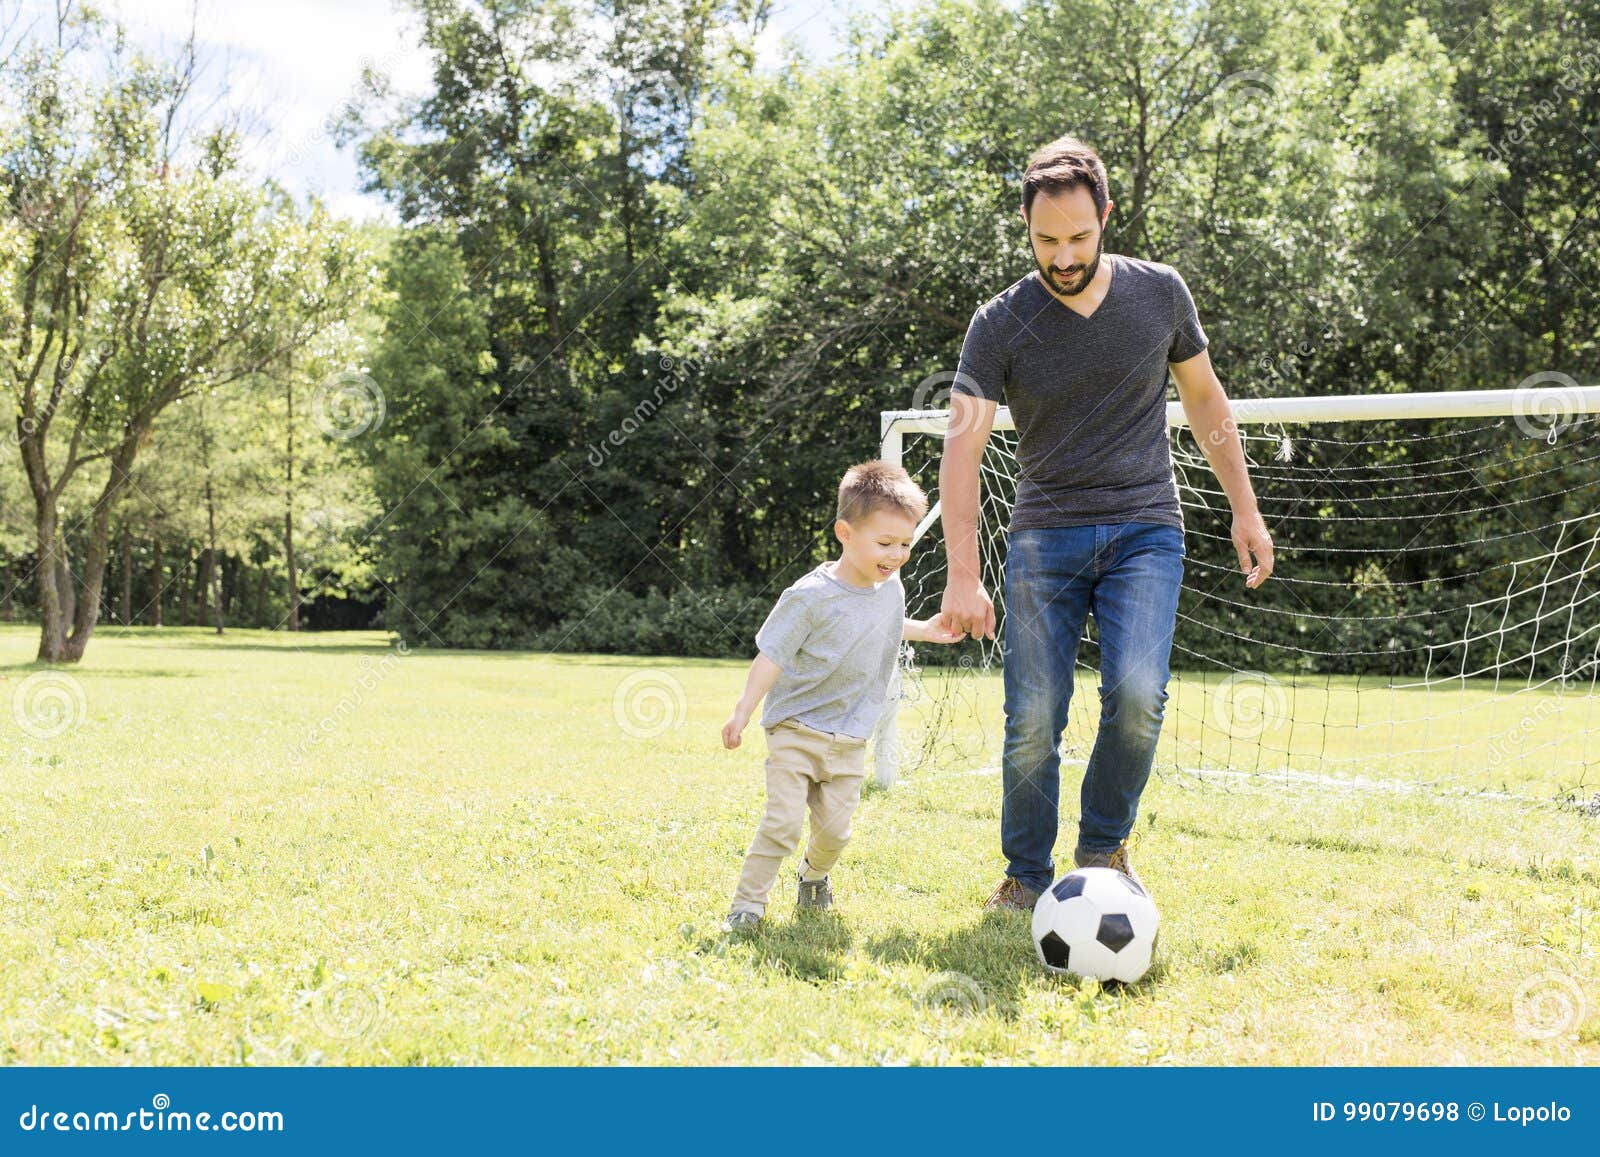 Папа играет в футбол. Отец и сын футбол. Футбол с сыном. Футбол с папой. Пап играет с сыном в футбол.